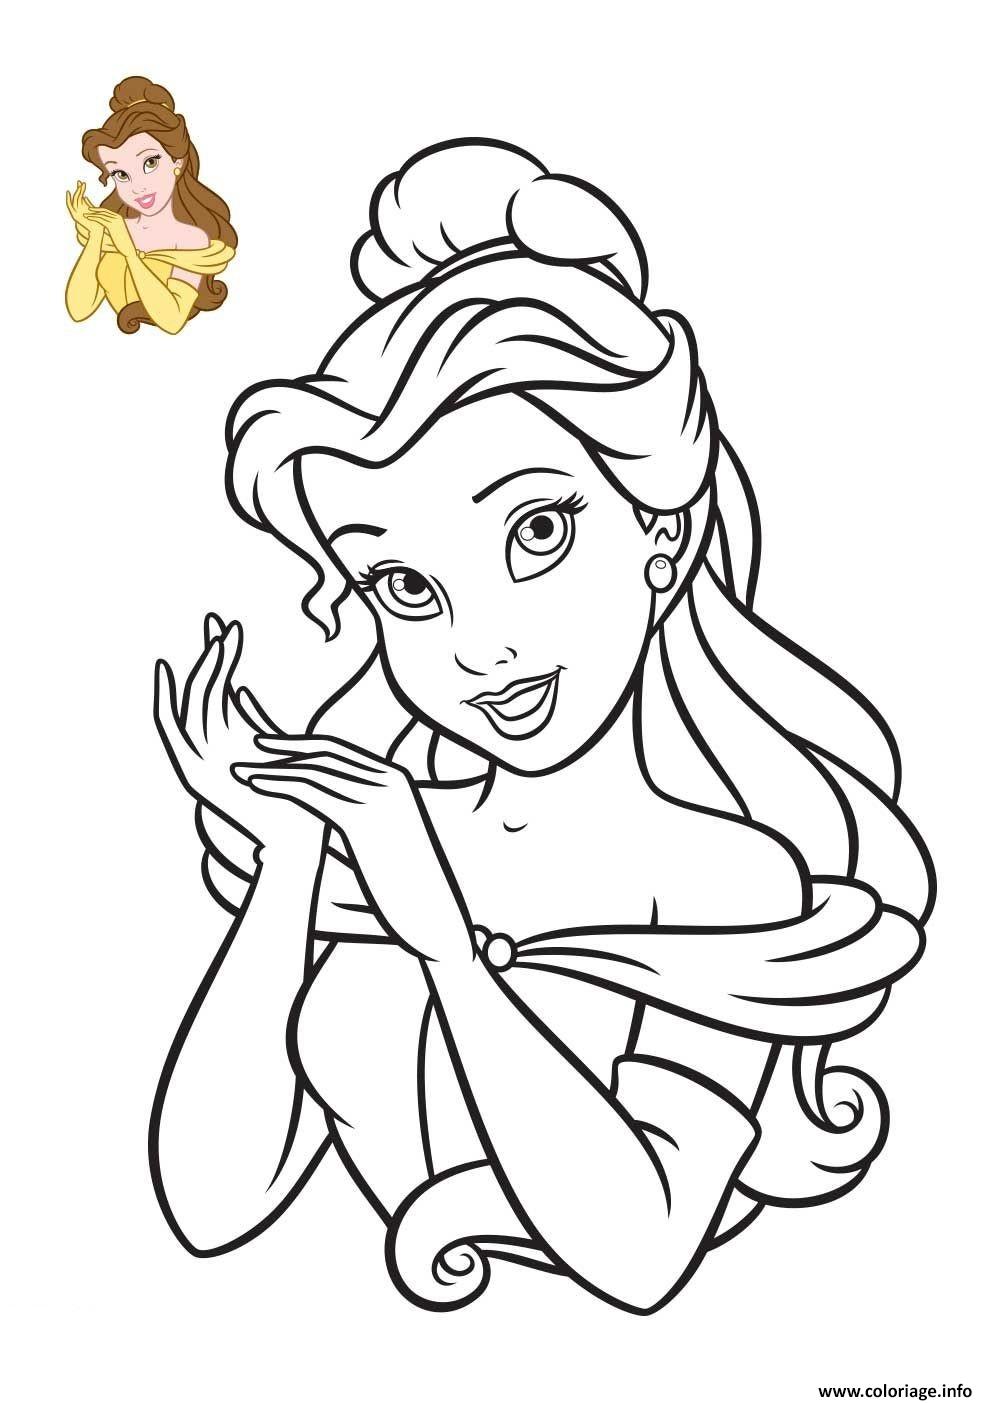 Coloriage Disney Princesse Tiana 2009 dessin